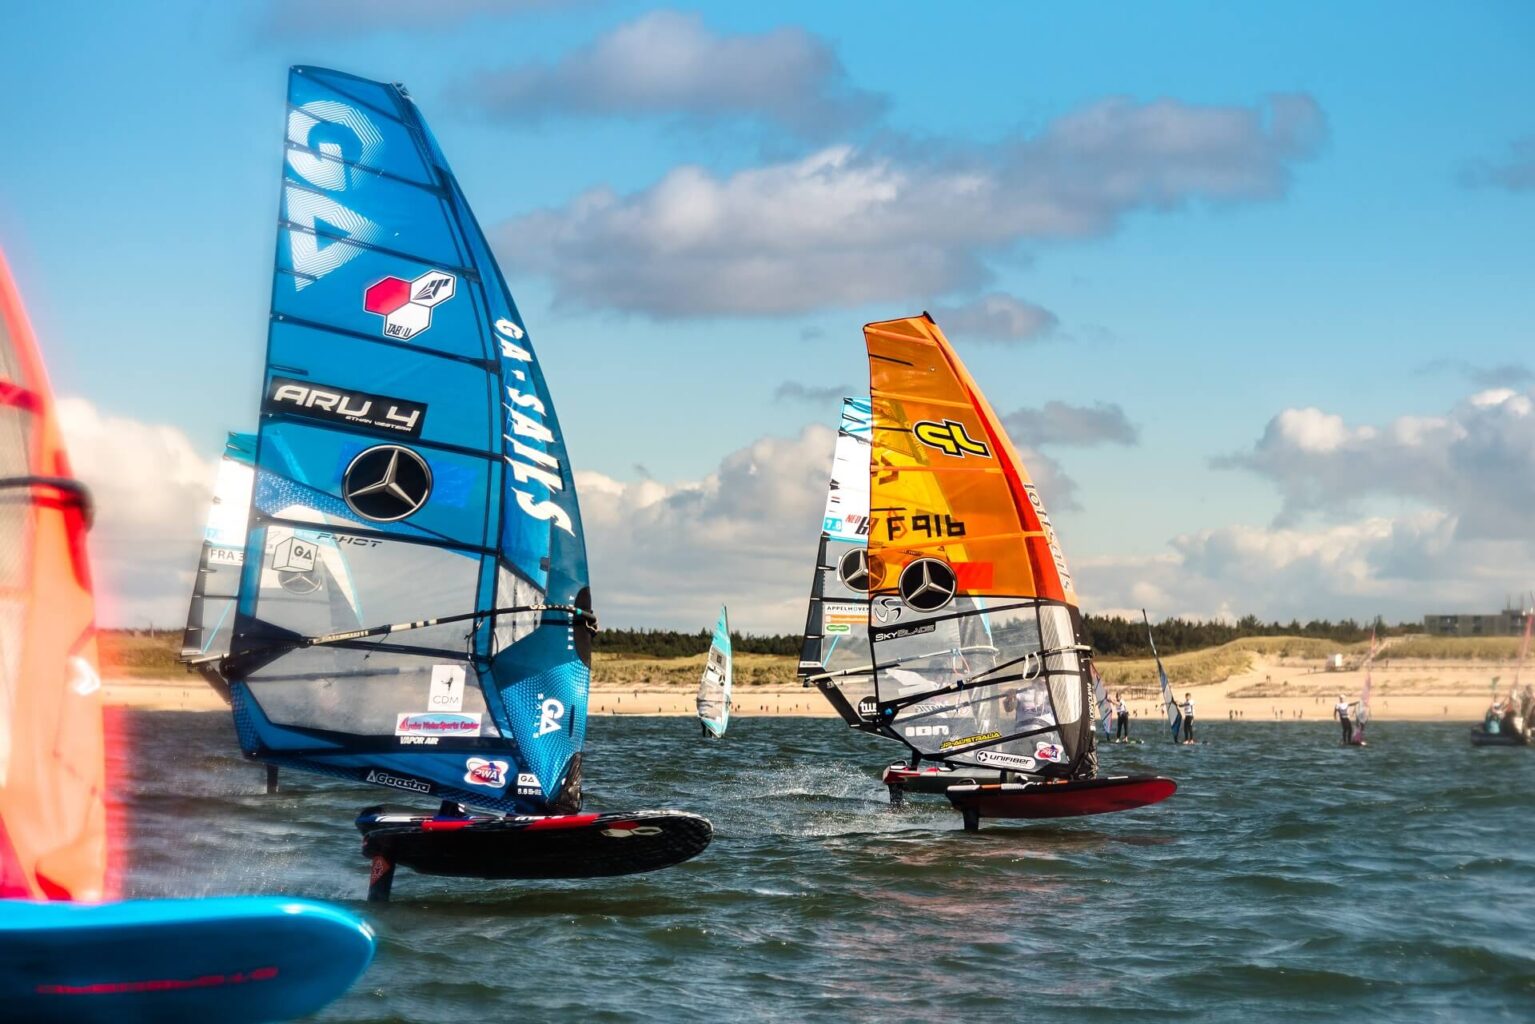 Windsurf World Cup Sylt 2019